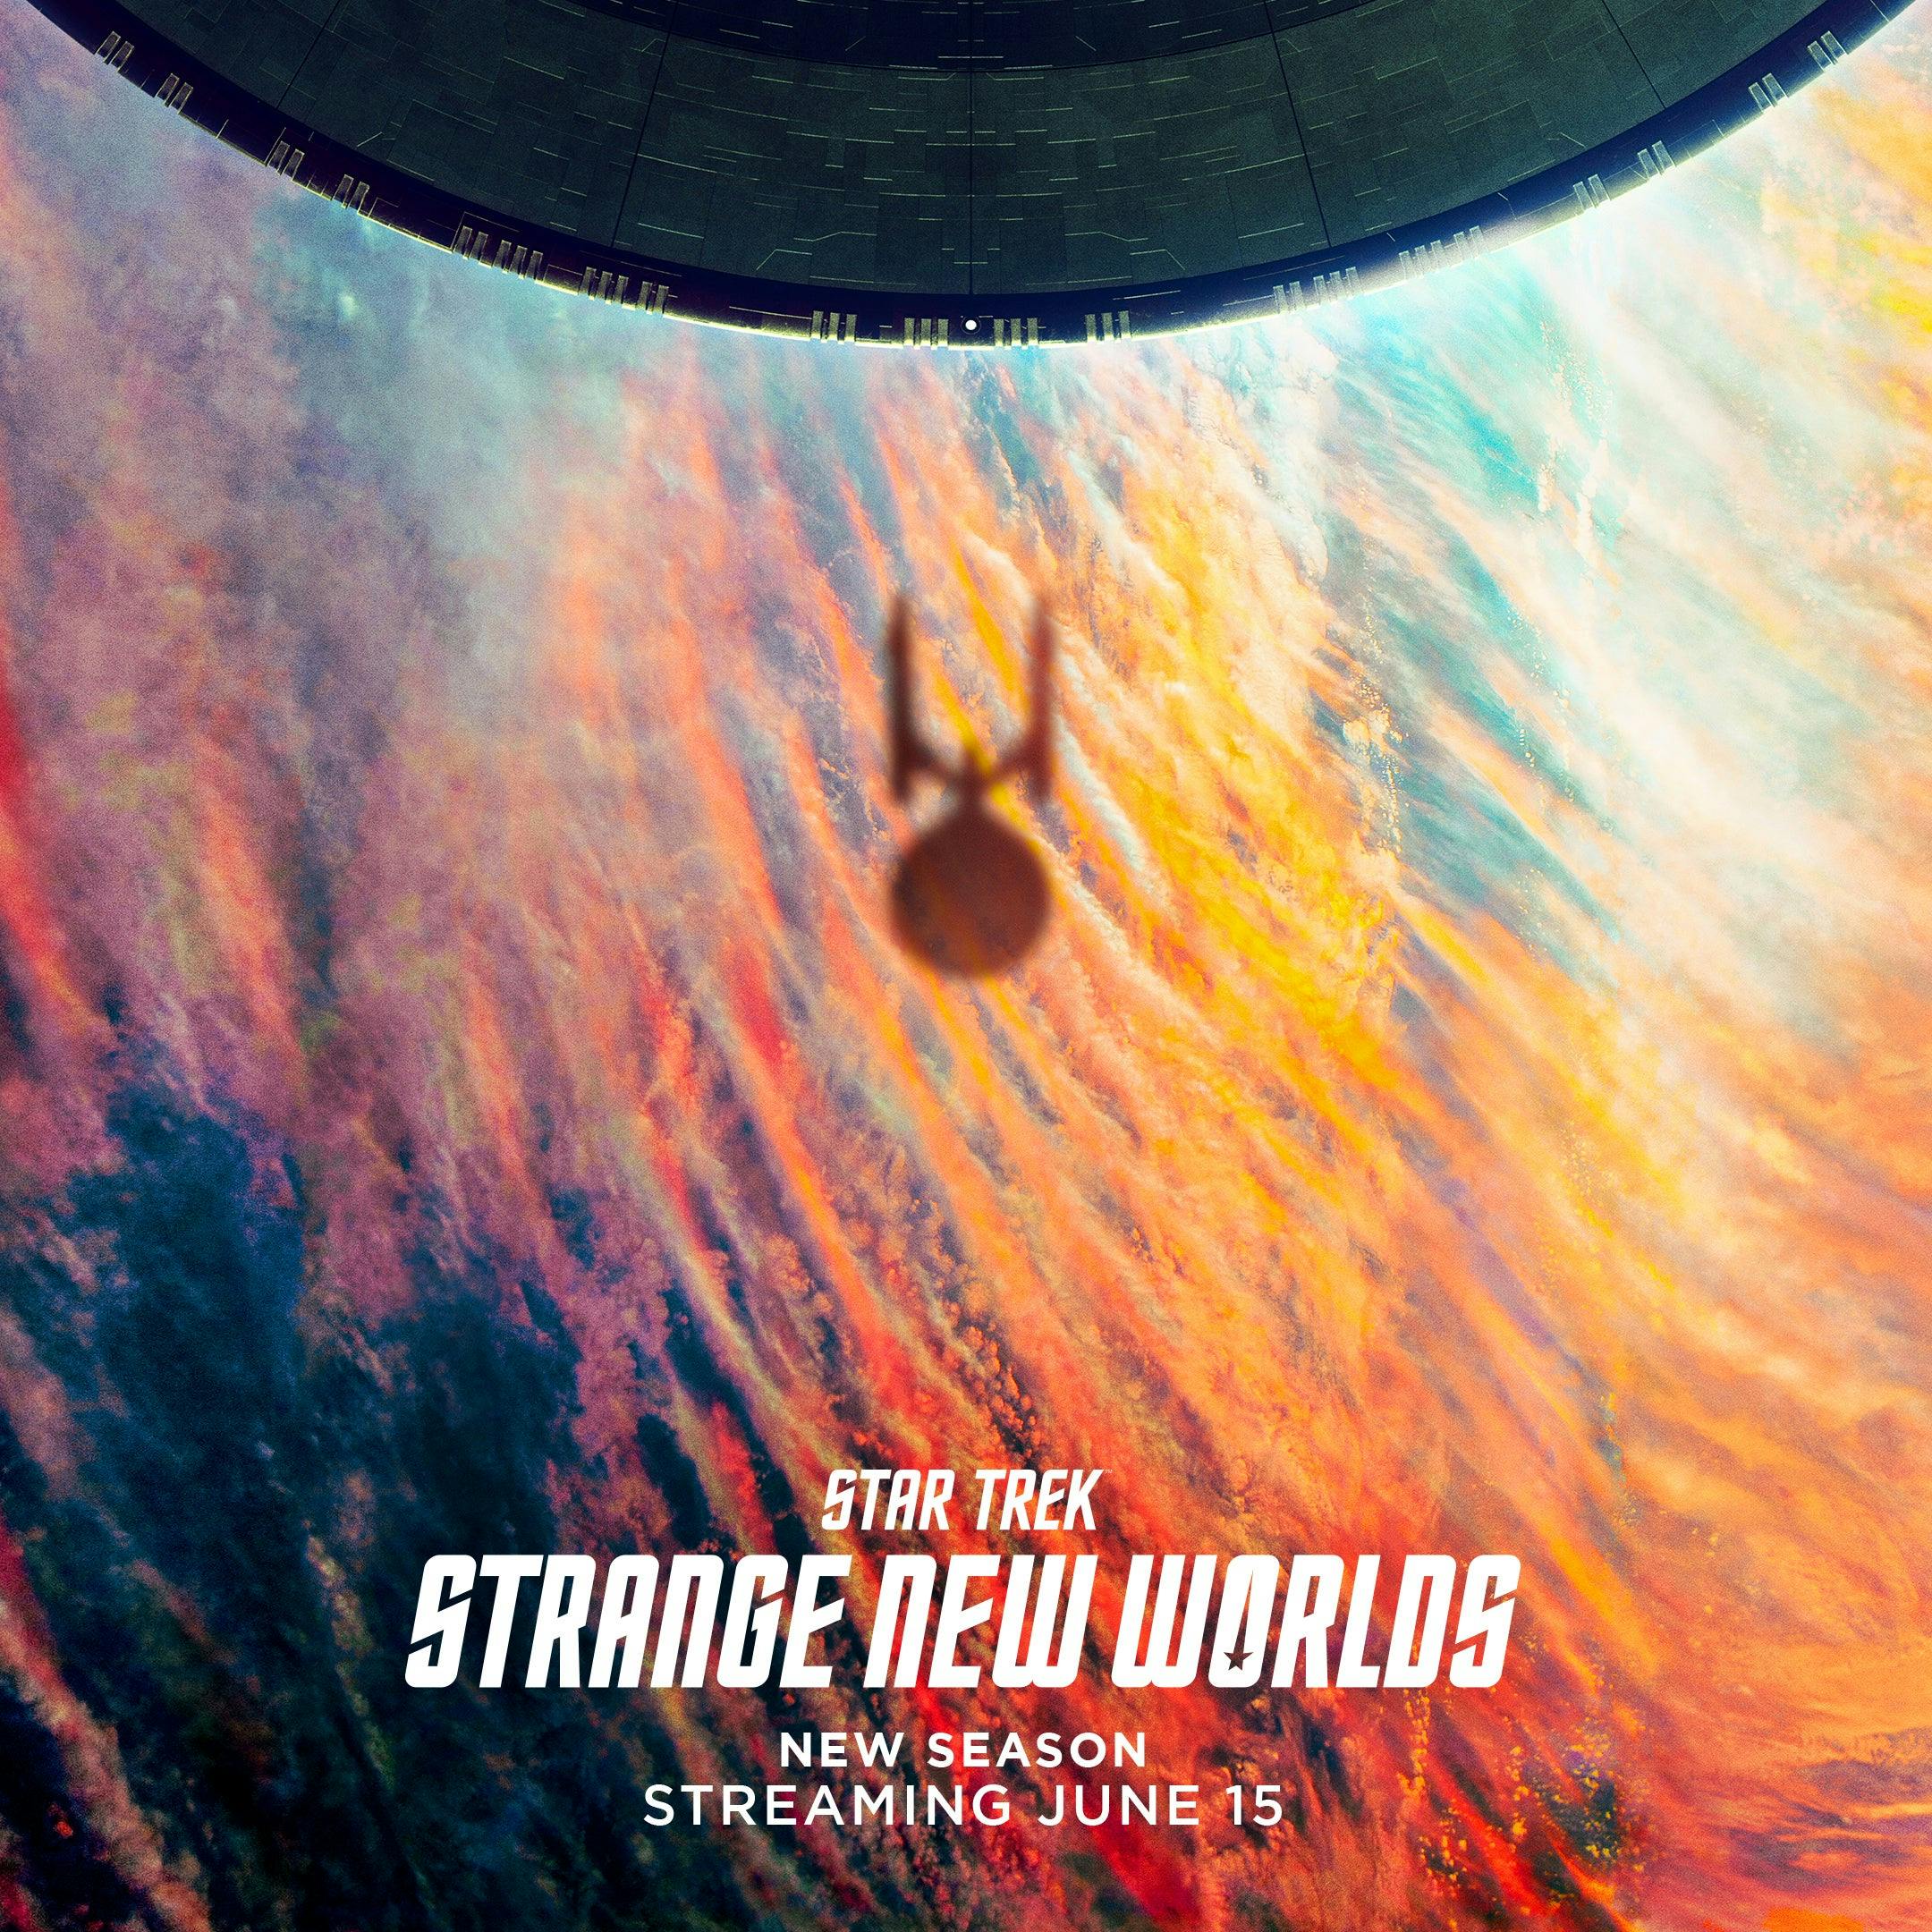 Star Trek: Strange New Worlds Season 2 teaser poster featuring the U.S.S. Enterprise